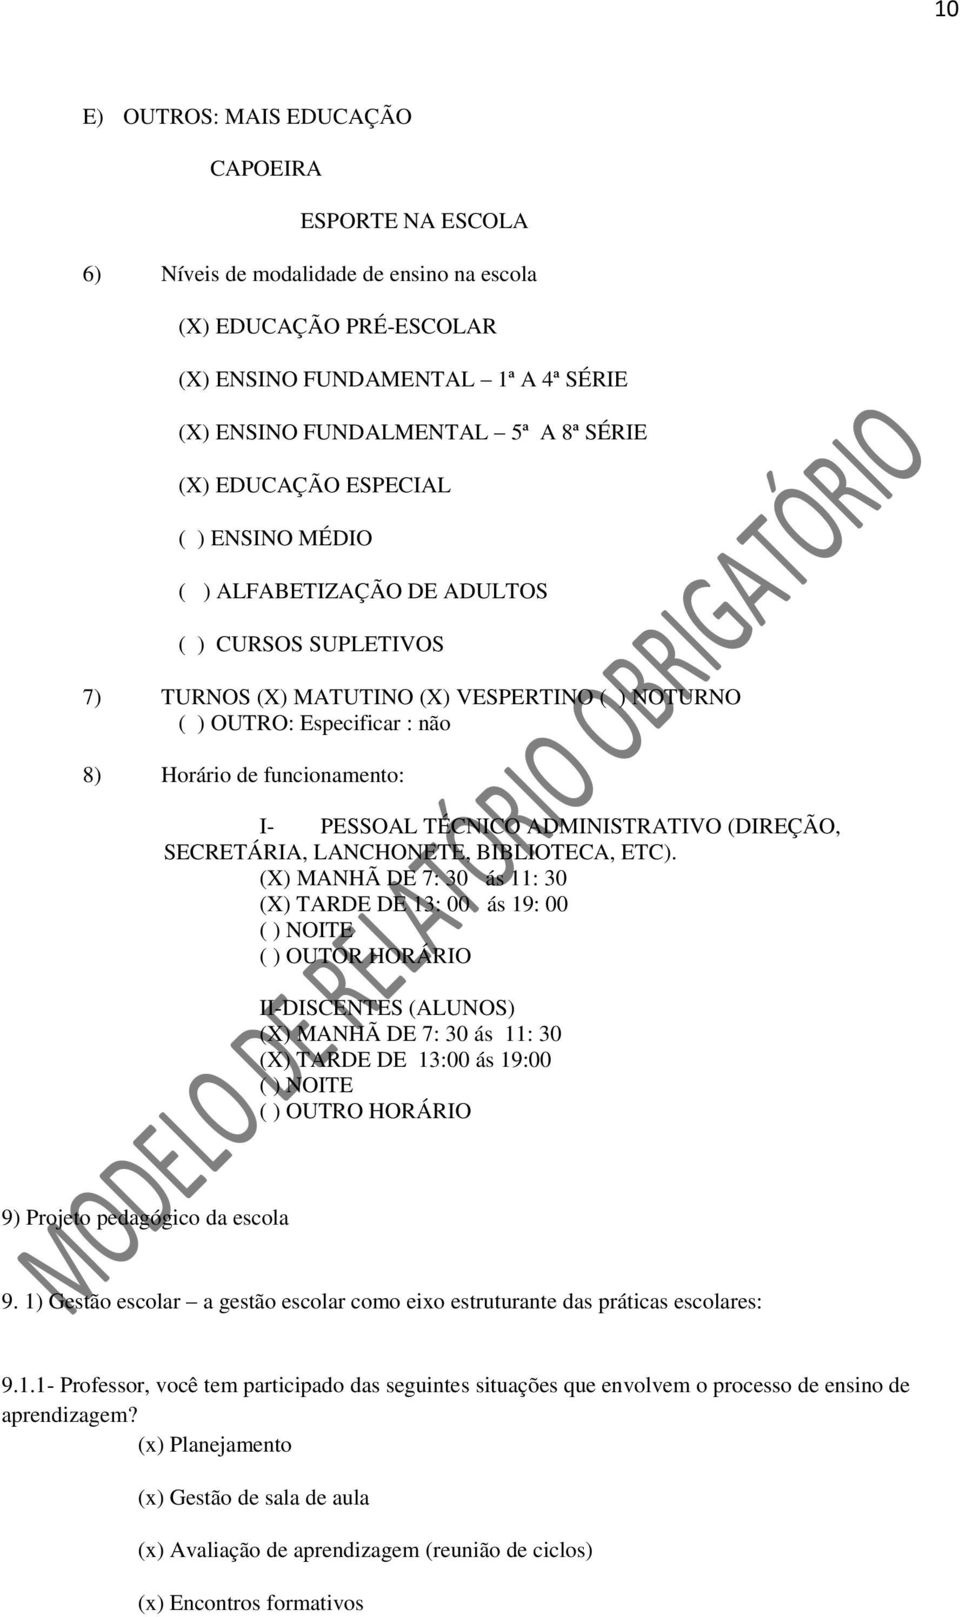 I- PESSOAL TÉCNICO ADMINISTRATIVO (DIREÇÃO, SECRETÁRIA, LANCHONETE, BIBLIOTECA, ETC).